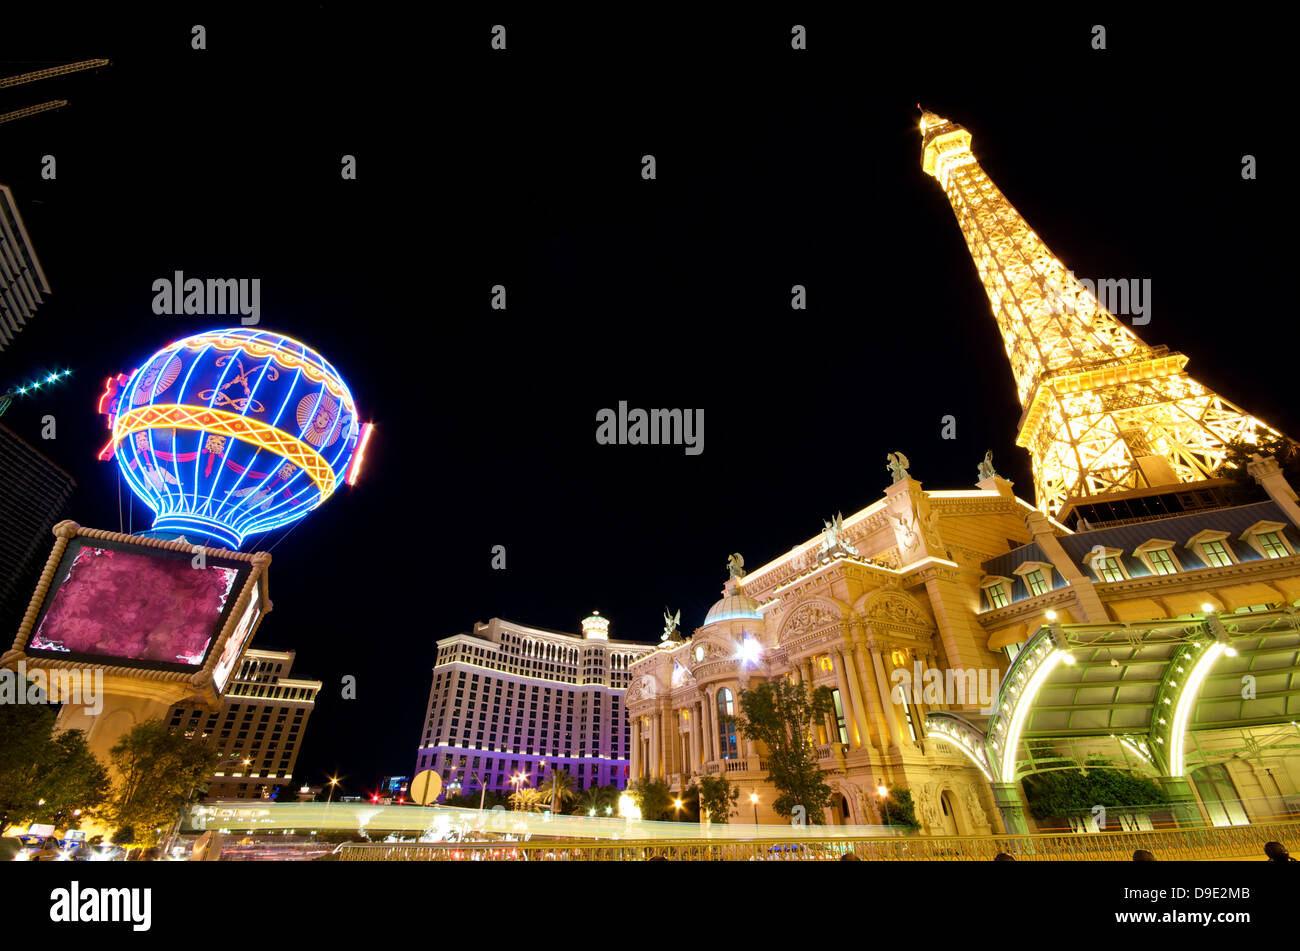 Paris Casino in Las Vegas Stock Photo